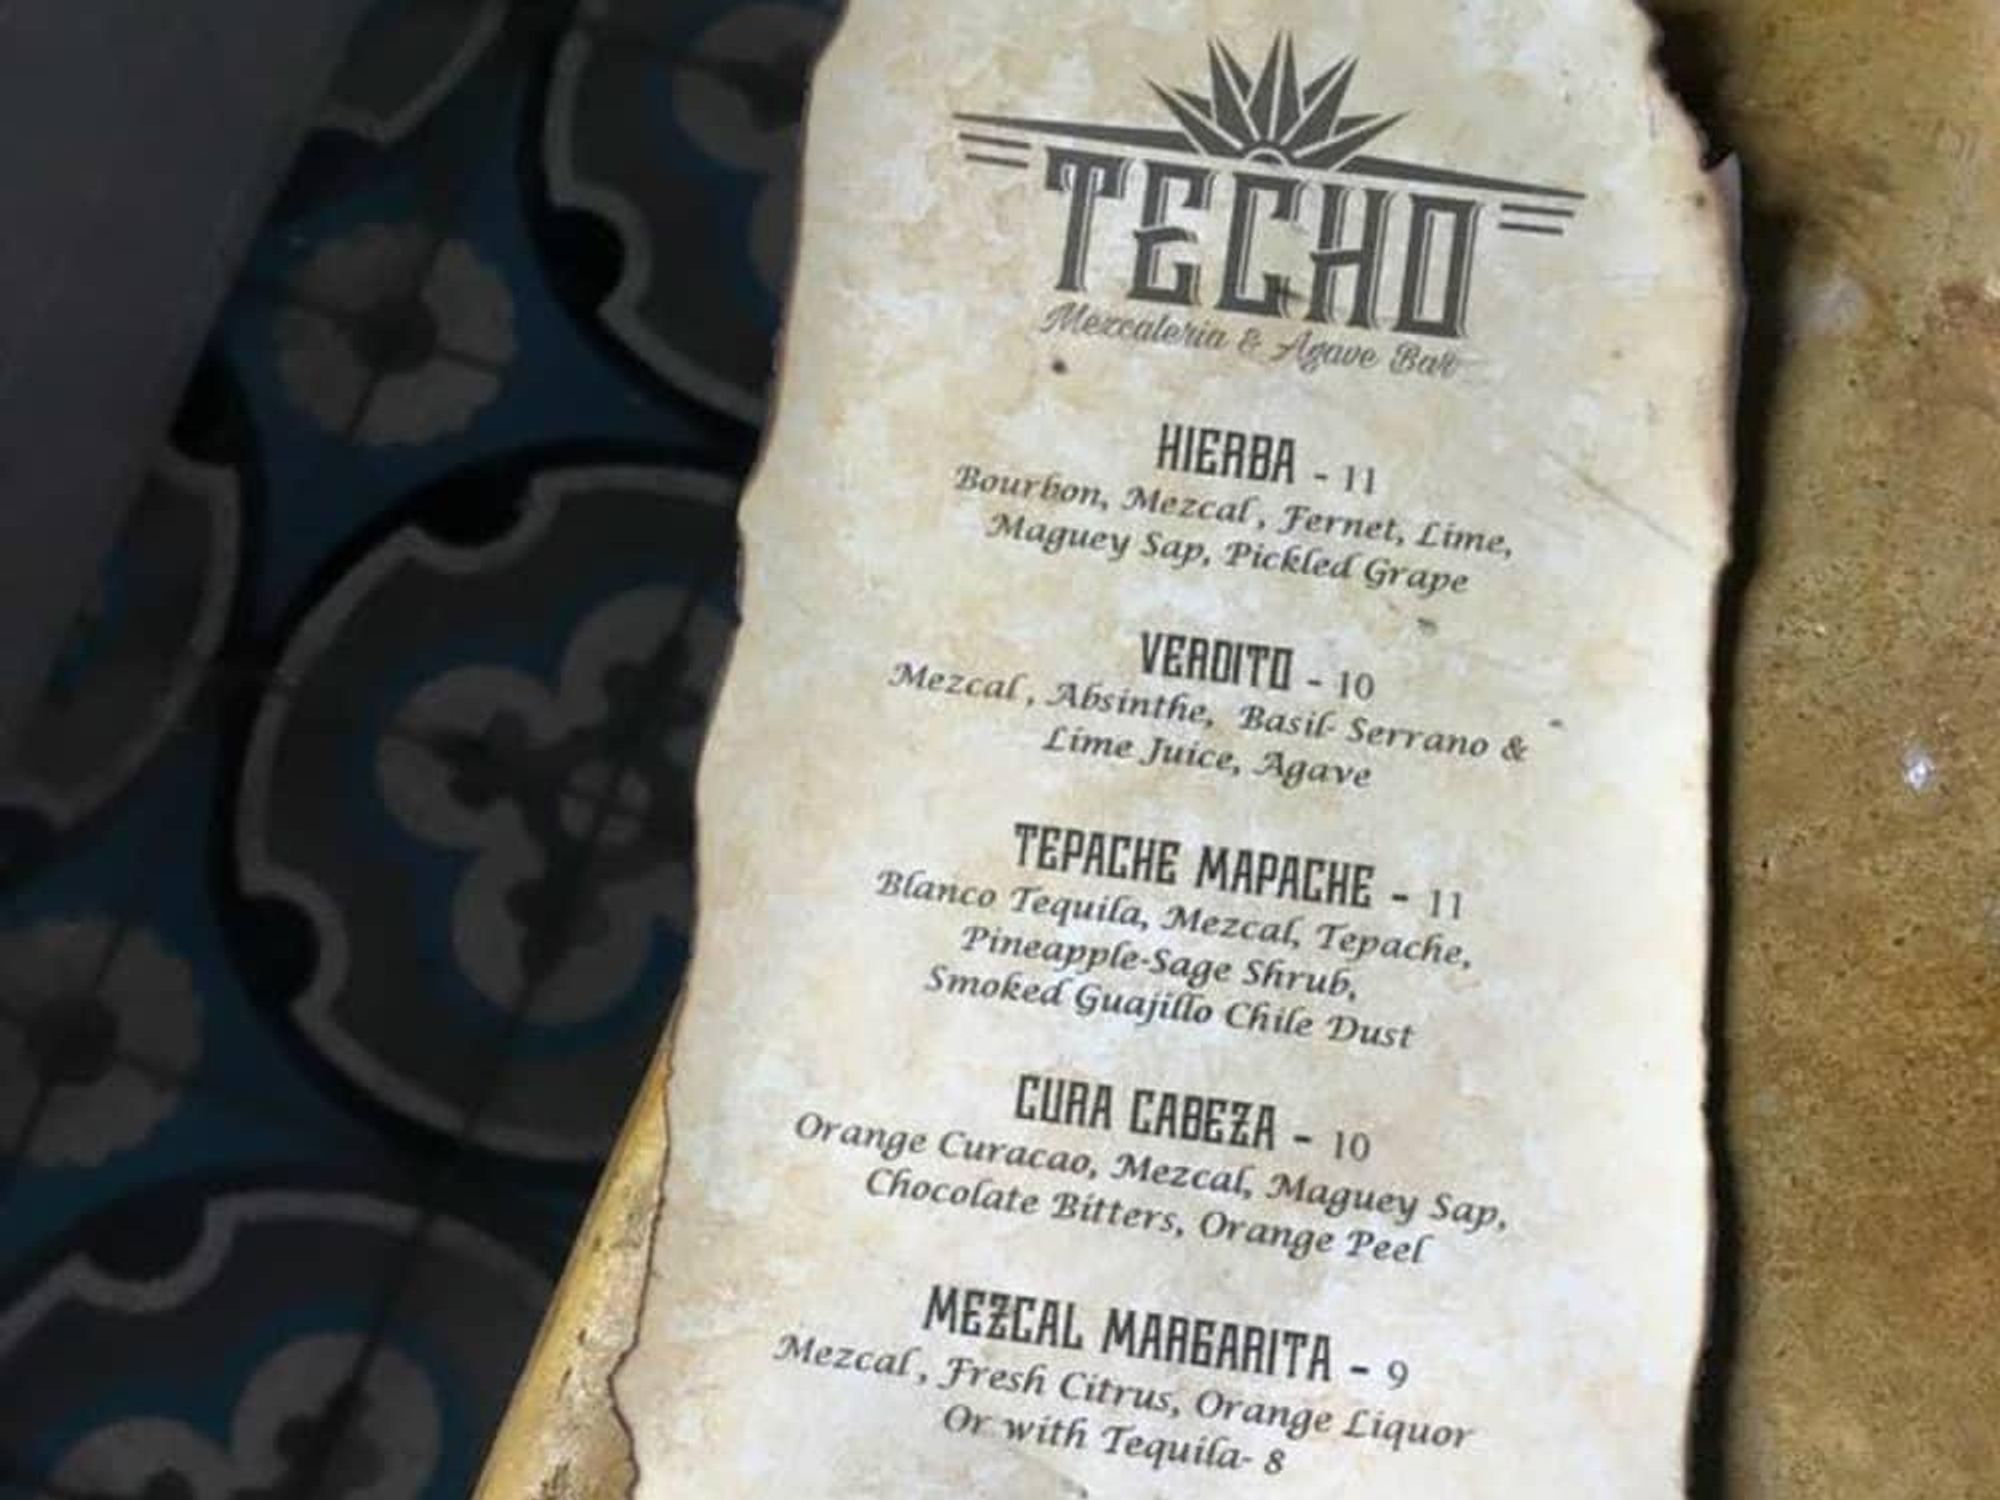 Techo Mezcaleria & Agave Bar mezcal mescal cocktail menu 2015